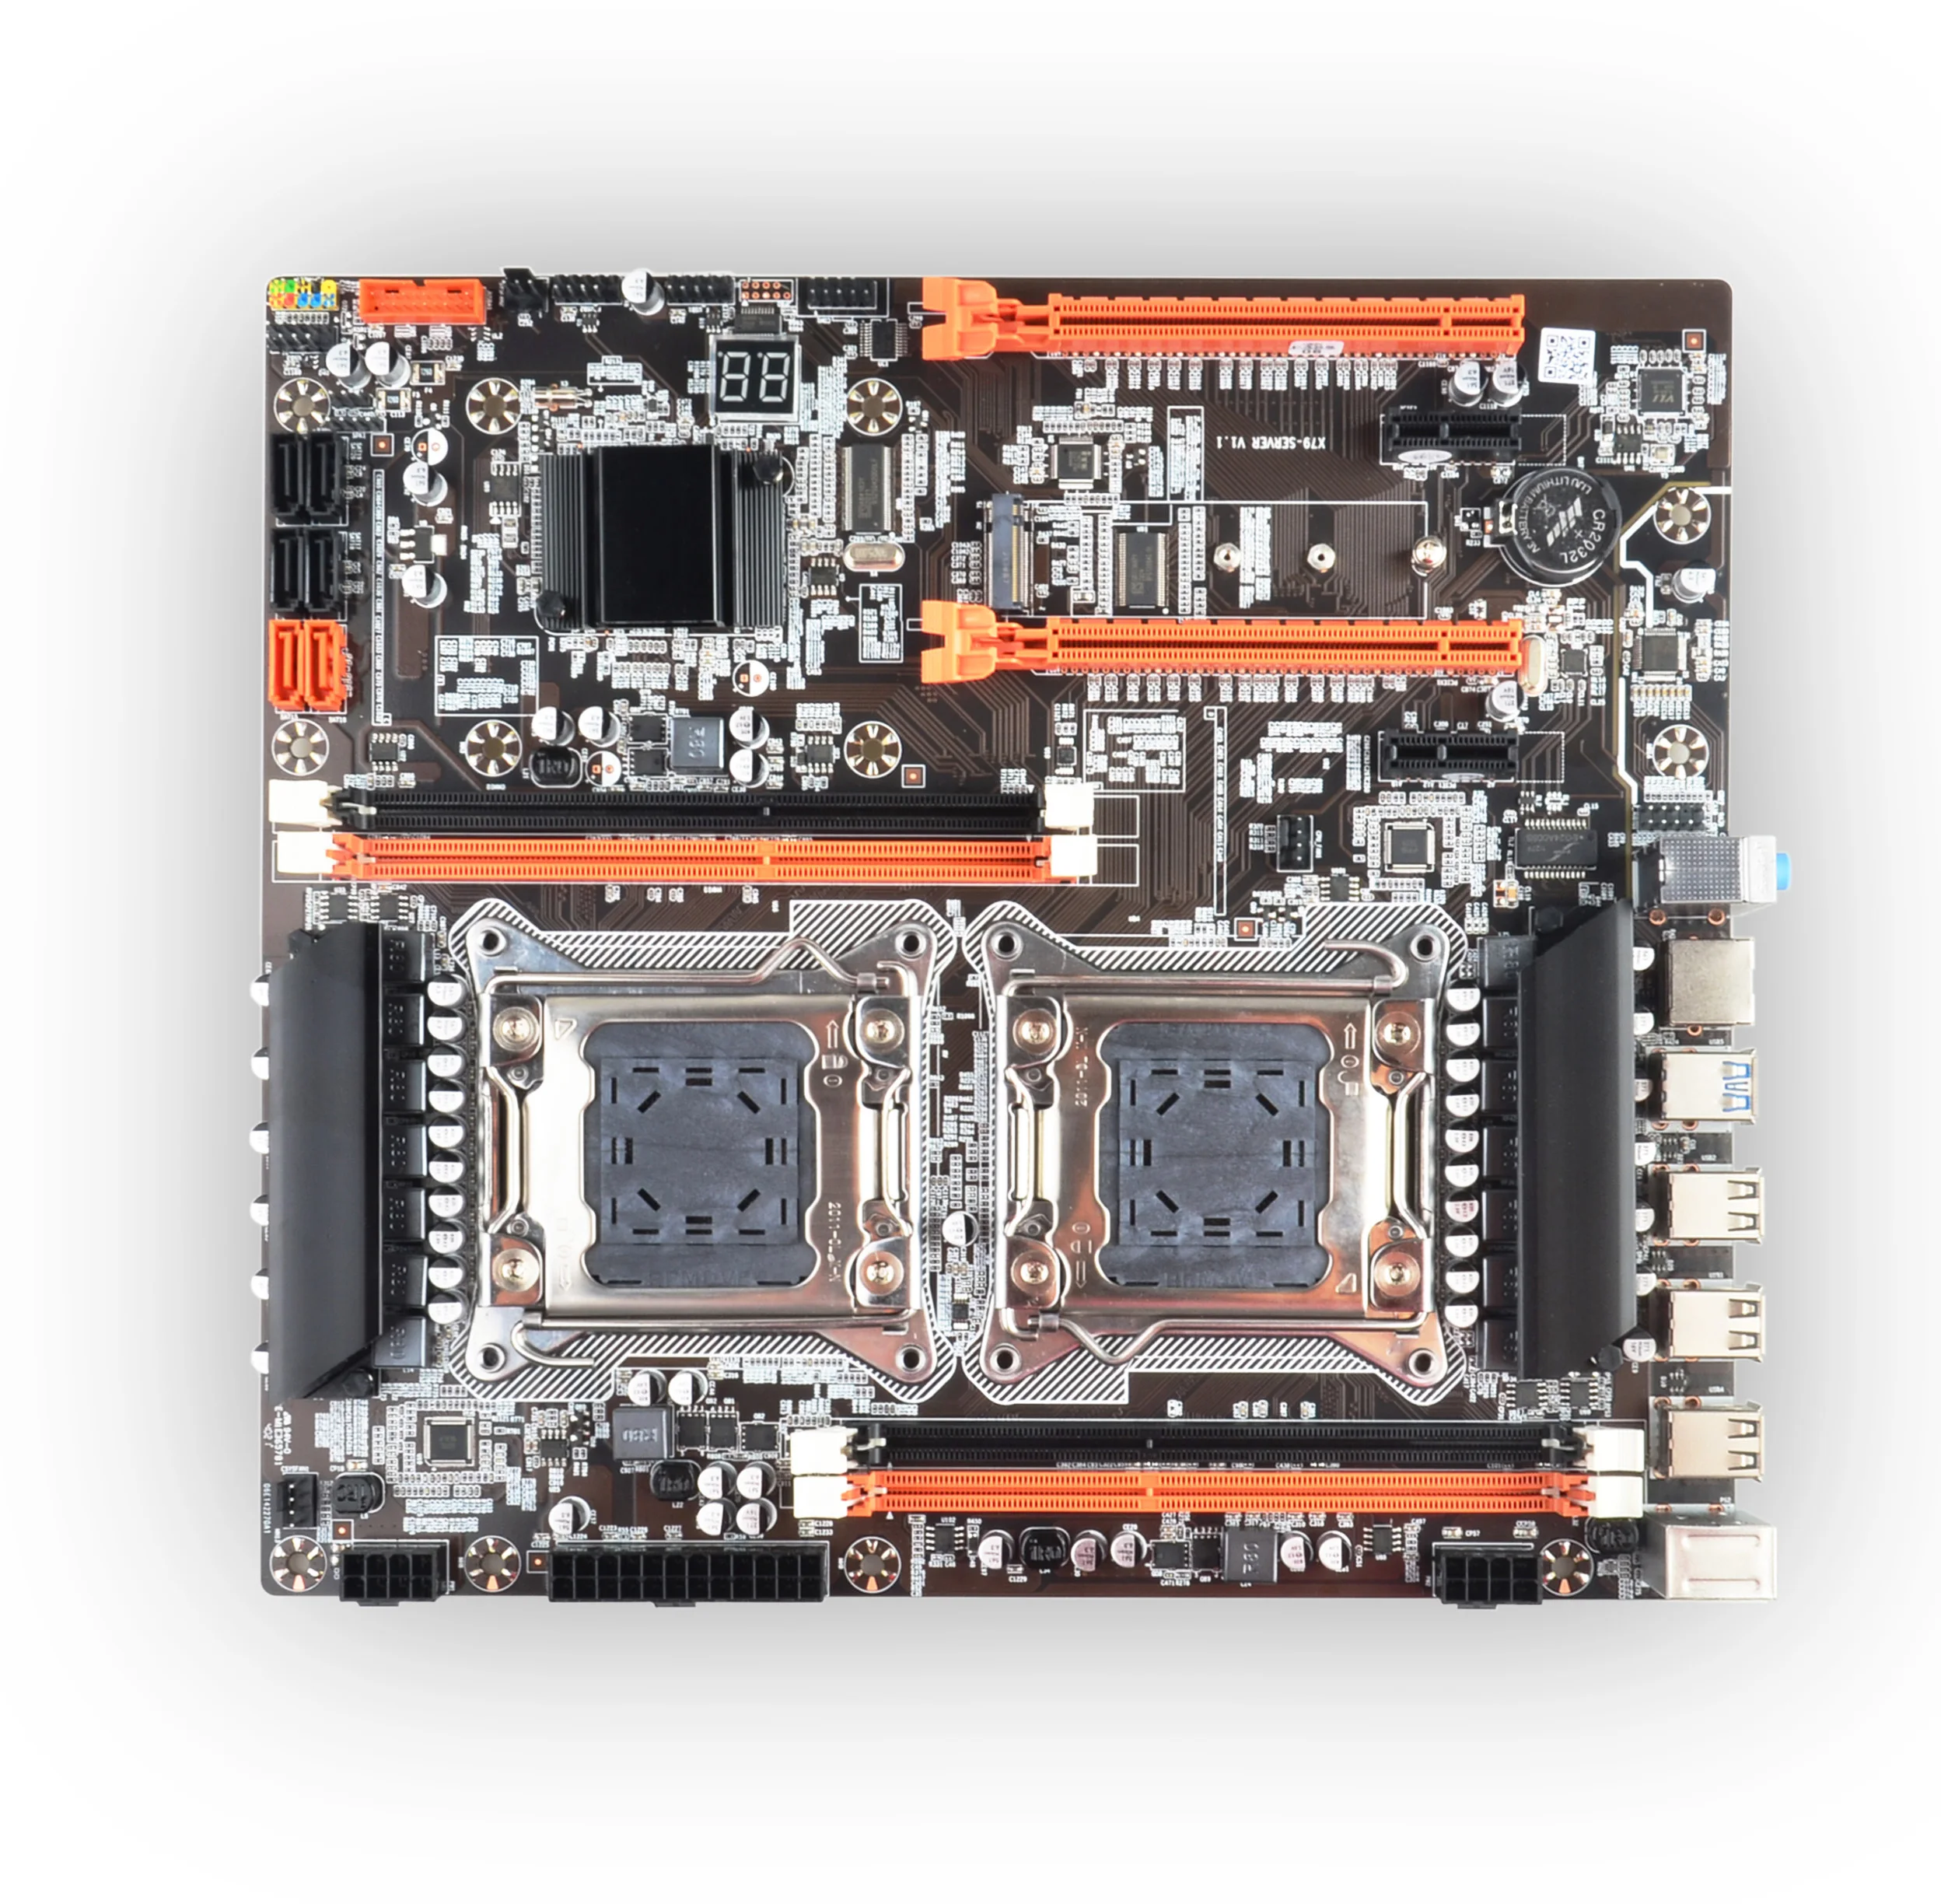 x79 dual cpu motherboard combo with 2pcs xeon e5 2689 4pcs 8gb 32gb 1600mhz pc3 12800 ddr3 ecc reg memory ram free global shipping